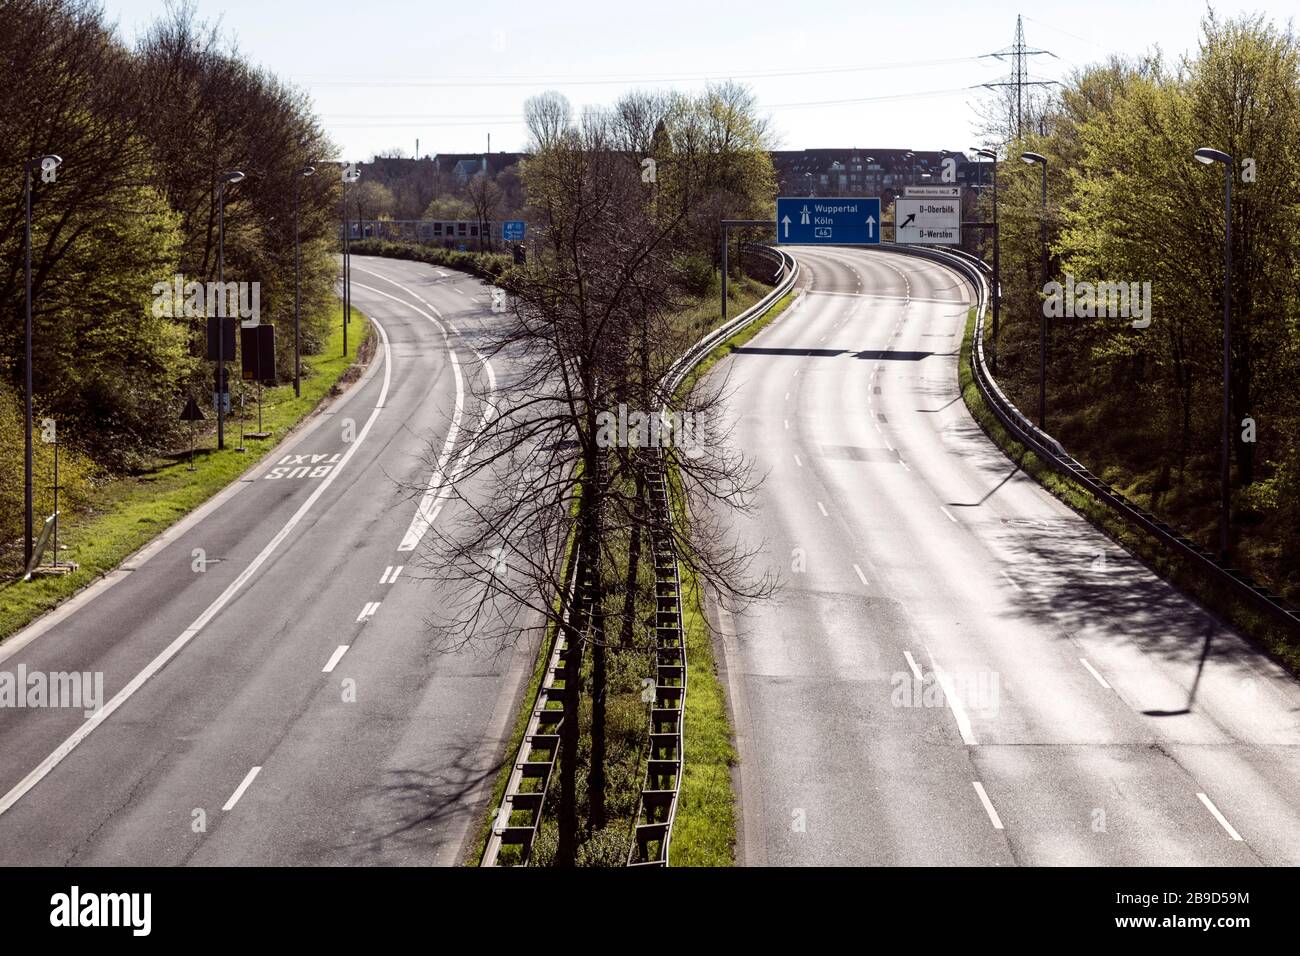 Strada autostradale insolitamente vuota a causa delle misure contro il coronavirus, qui vicino alla Heinrich-Heine University Dusseldorf Foto Stock